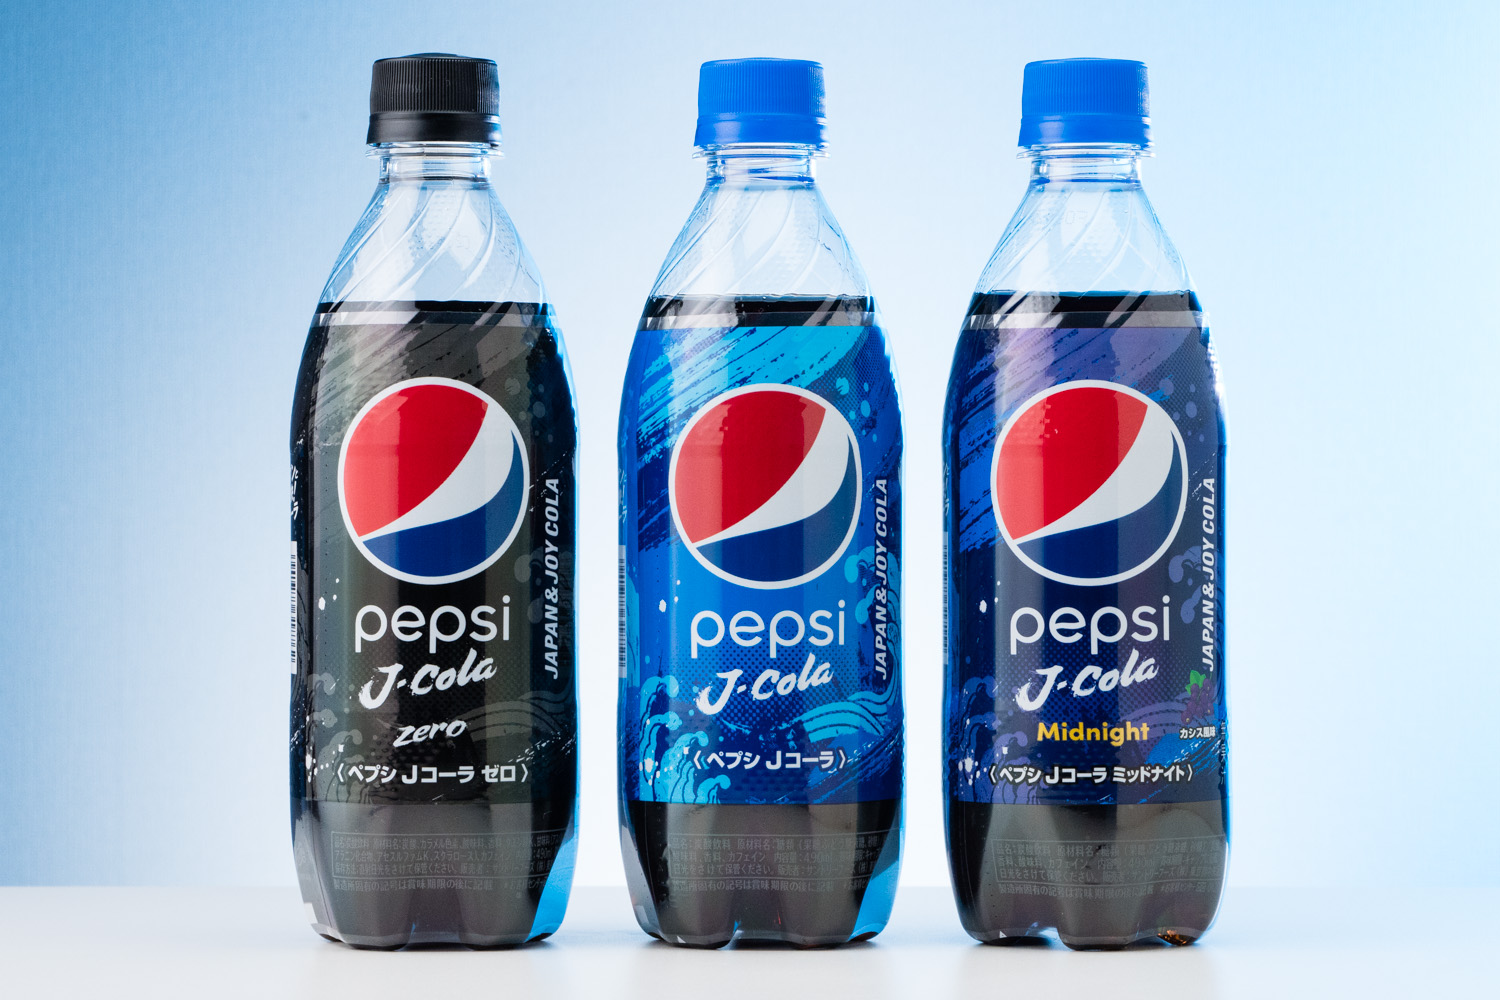 北斎波頭ロゴがワイルド！ コーラ好き日本人のために生まれた新ブランド『ペプシ Jコーラ』を生粋のコーラ好きが検証してみた | おためし新商品ナビ